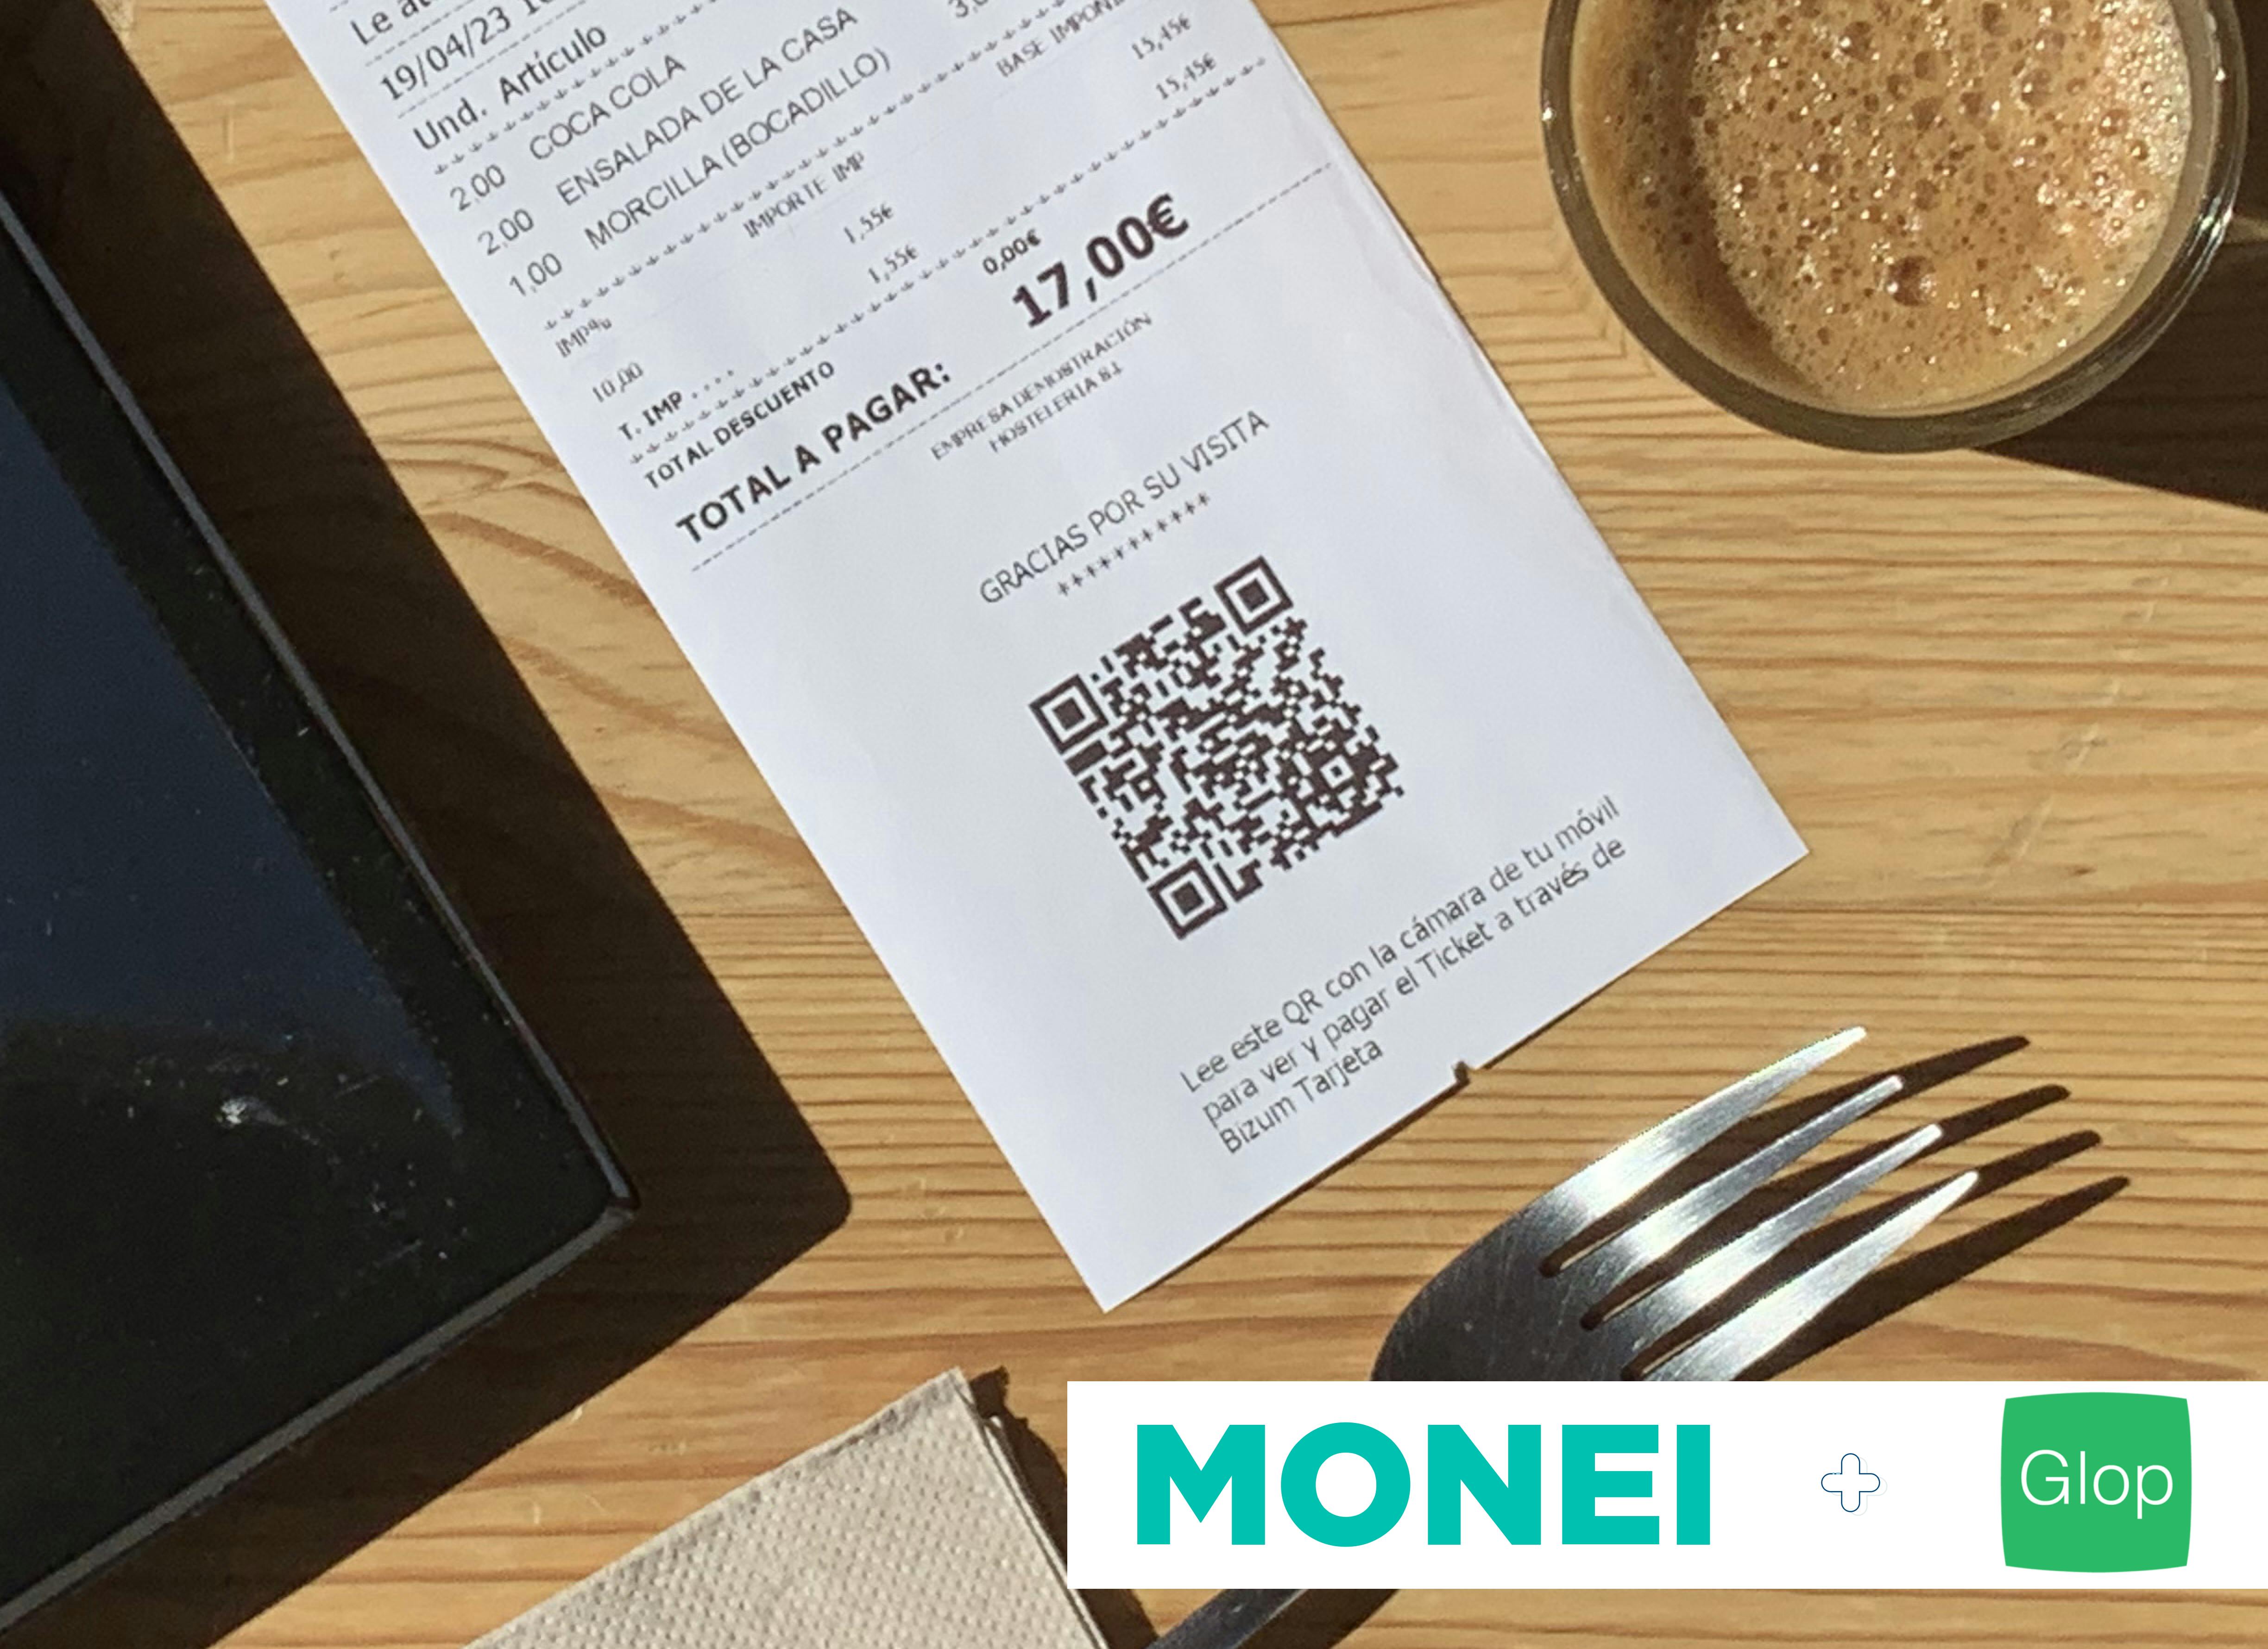 Restaurant receipt with QR code 